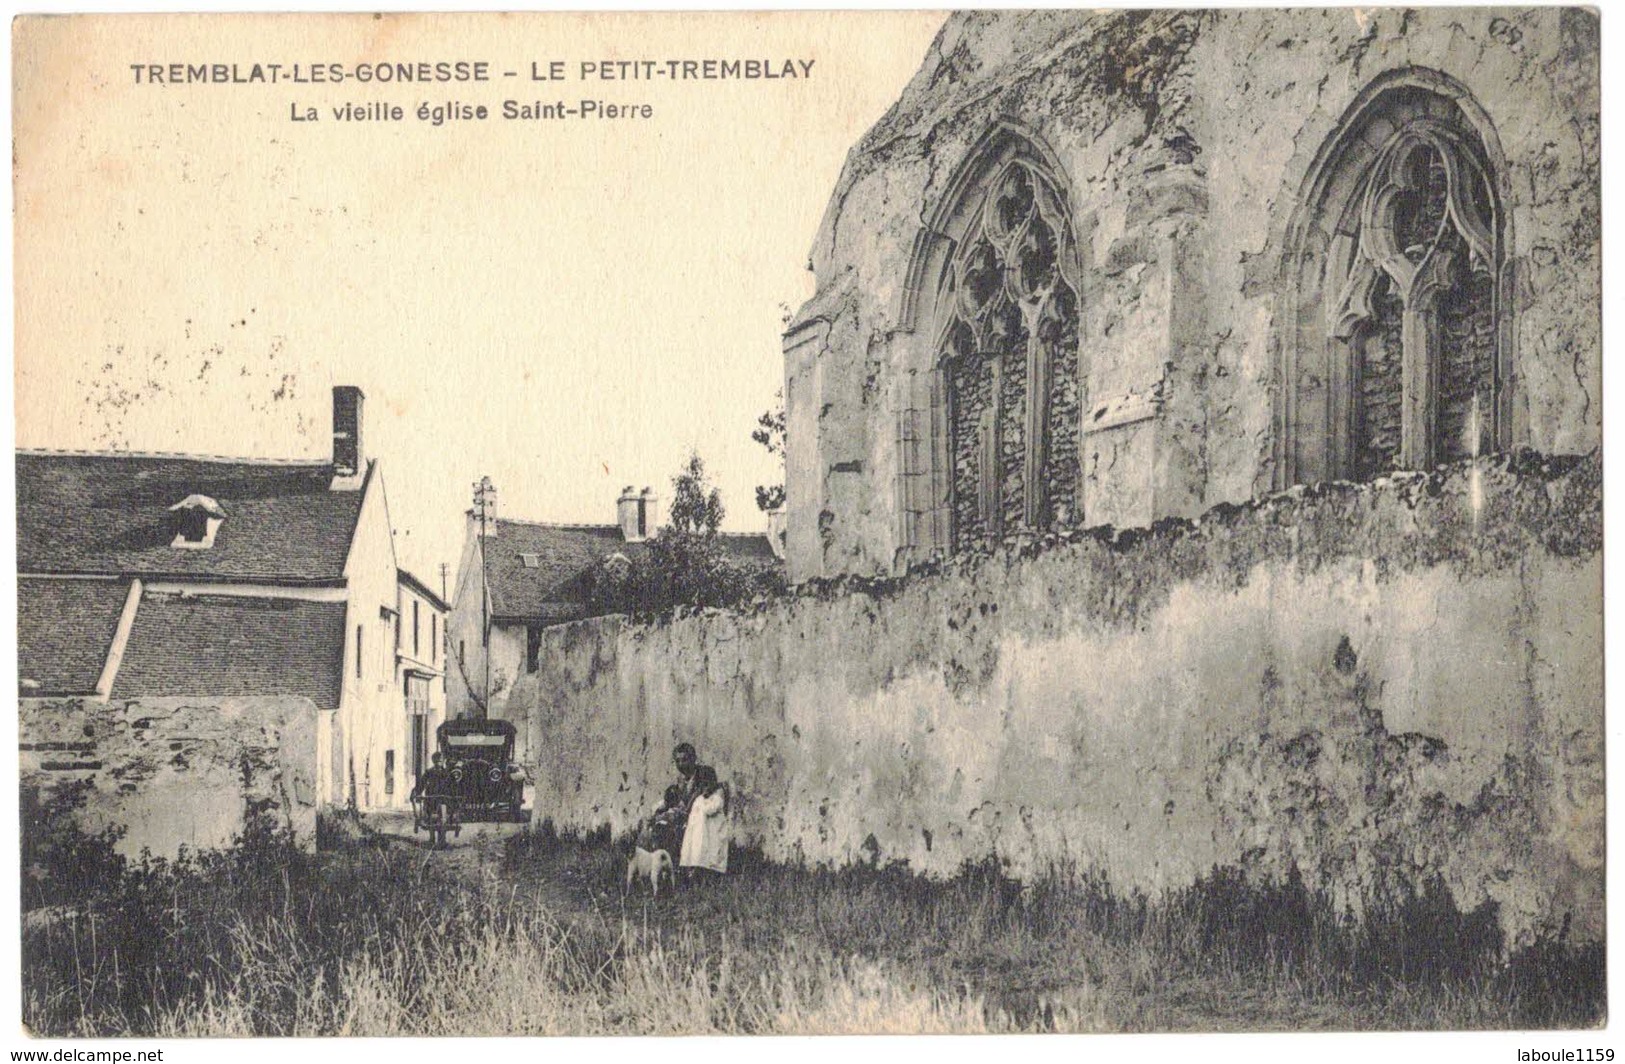 TREMBLAT LES GONESSE LE PETIT TREMBLAY : Rare Petit Tirage La Vieille Eglise St Pierre Auto Enfant Femme Chien Brouette - Tremblay En France